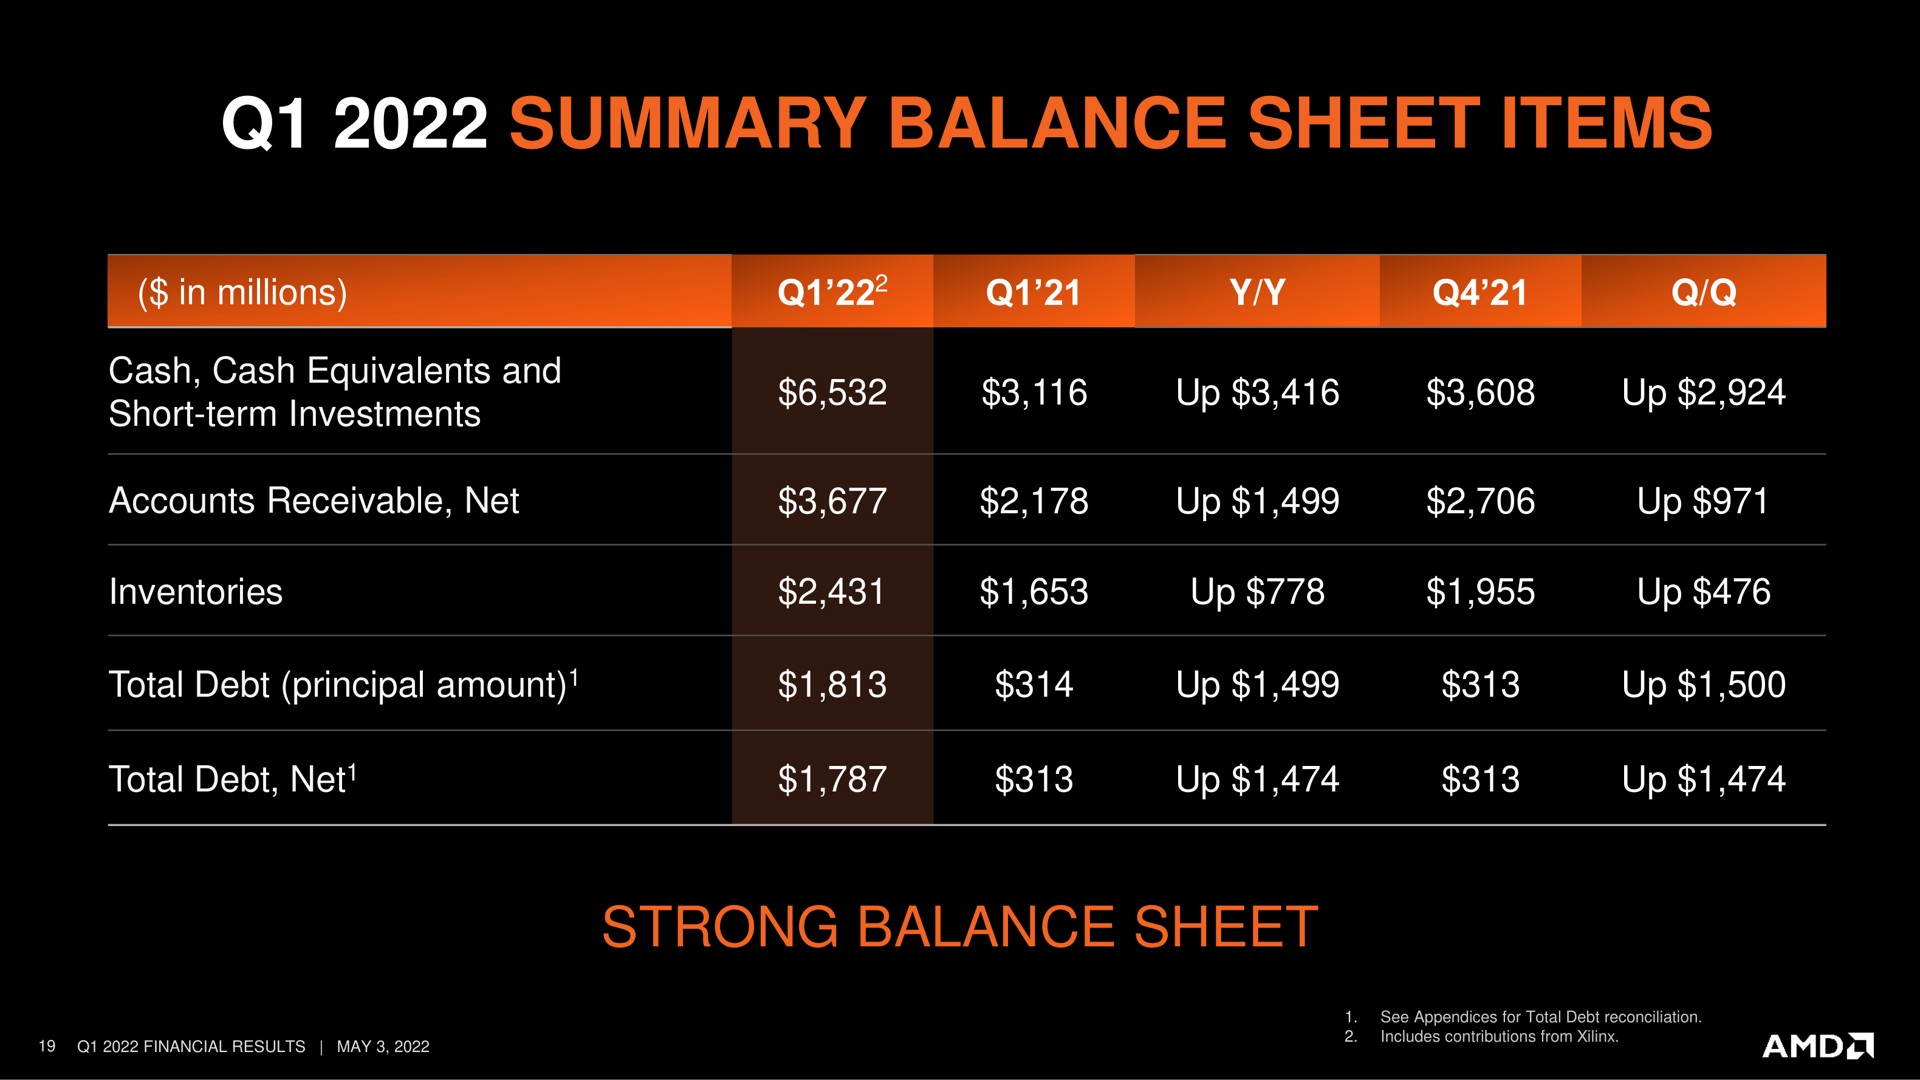 summary balance sheet items strong balance sheet | AMD